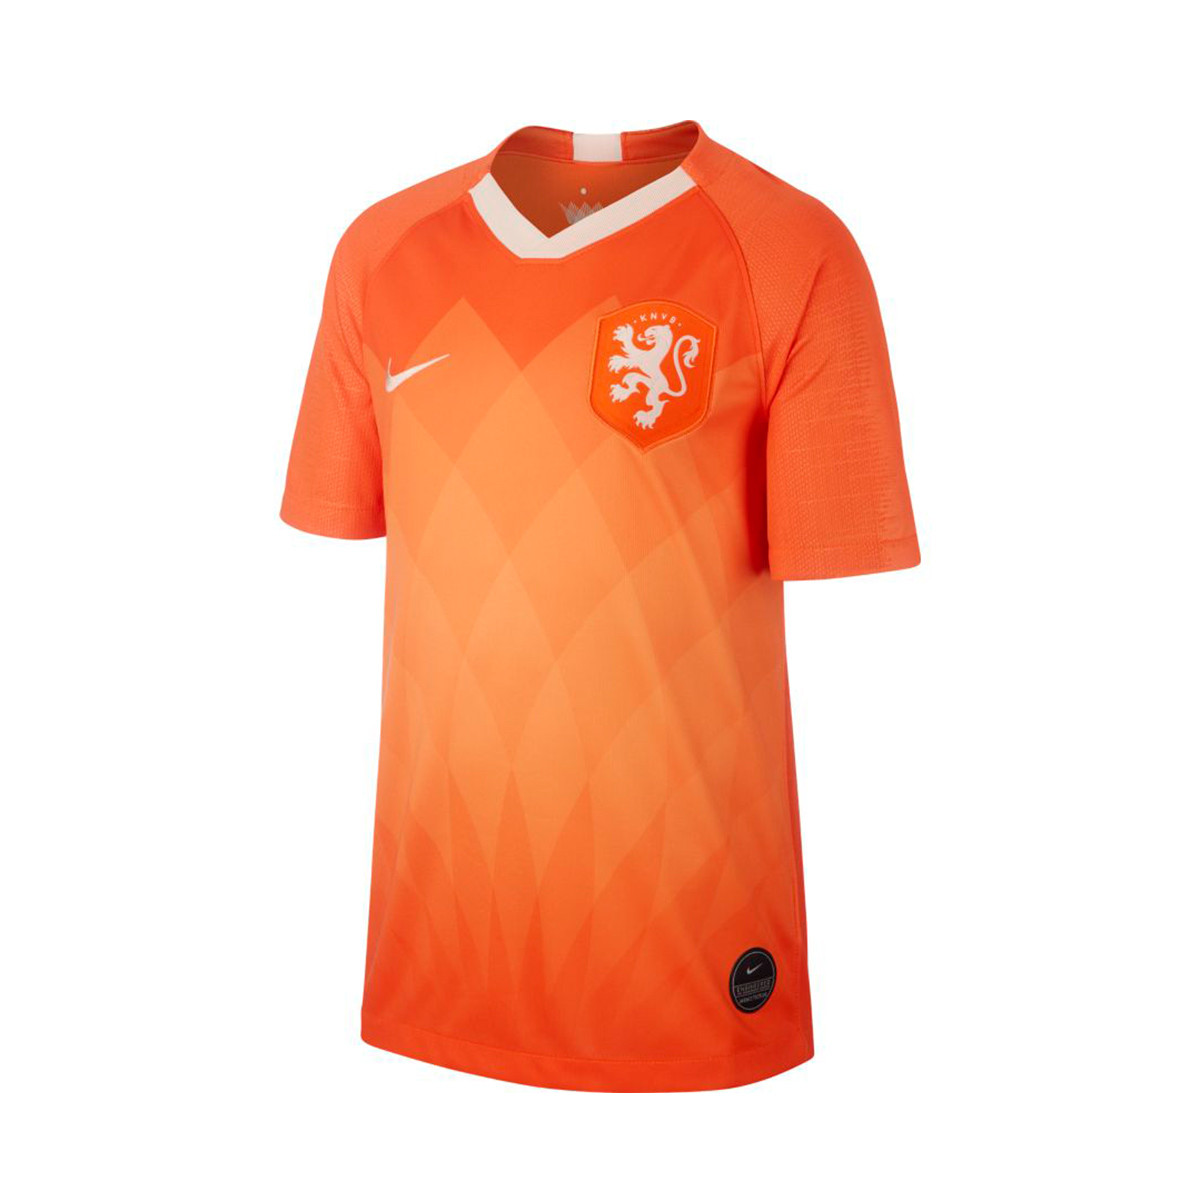 Camiseta Nike Selección Holanda Breathe Stadium SS Primera Equipación 2018- 2019 Niño Safety orange-Orange quartz - Tienda de fútbol Fútbol Emotion